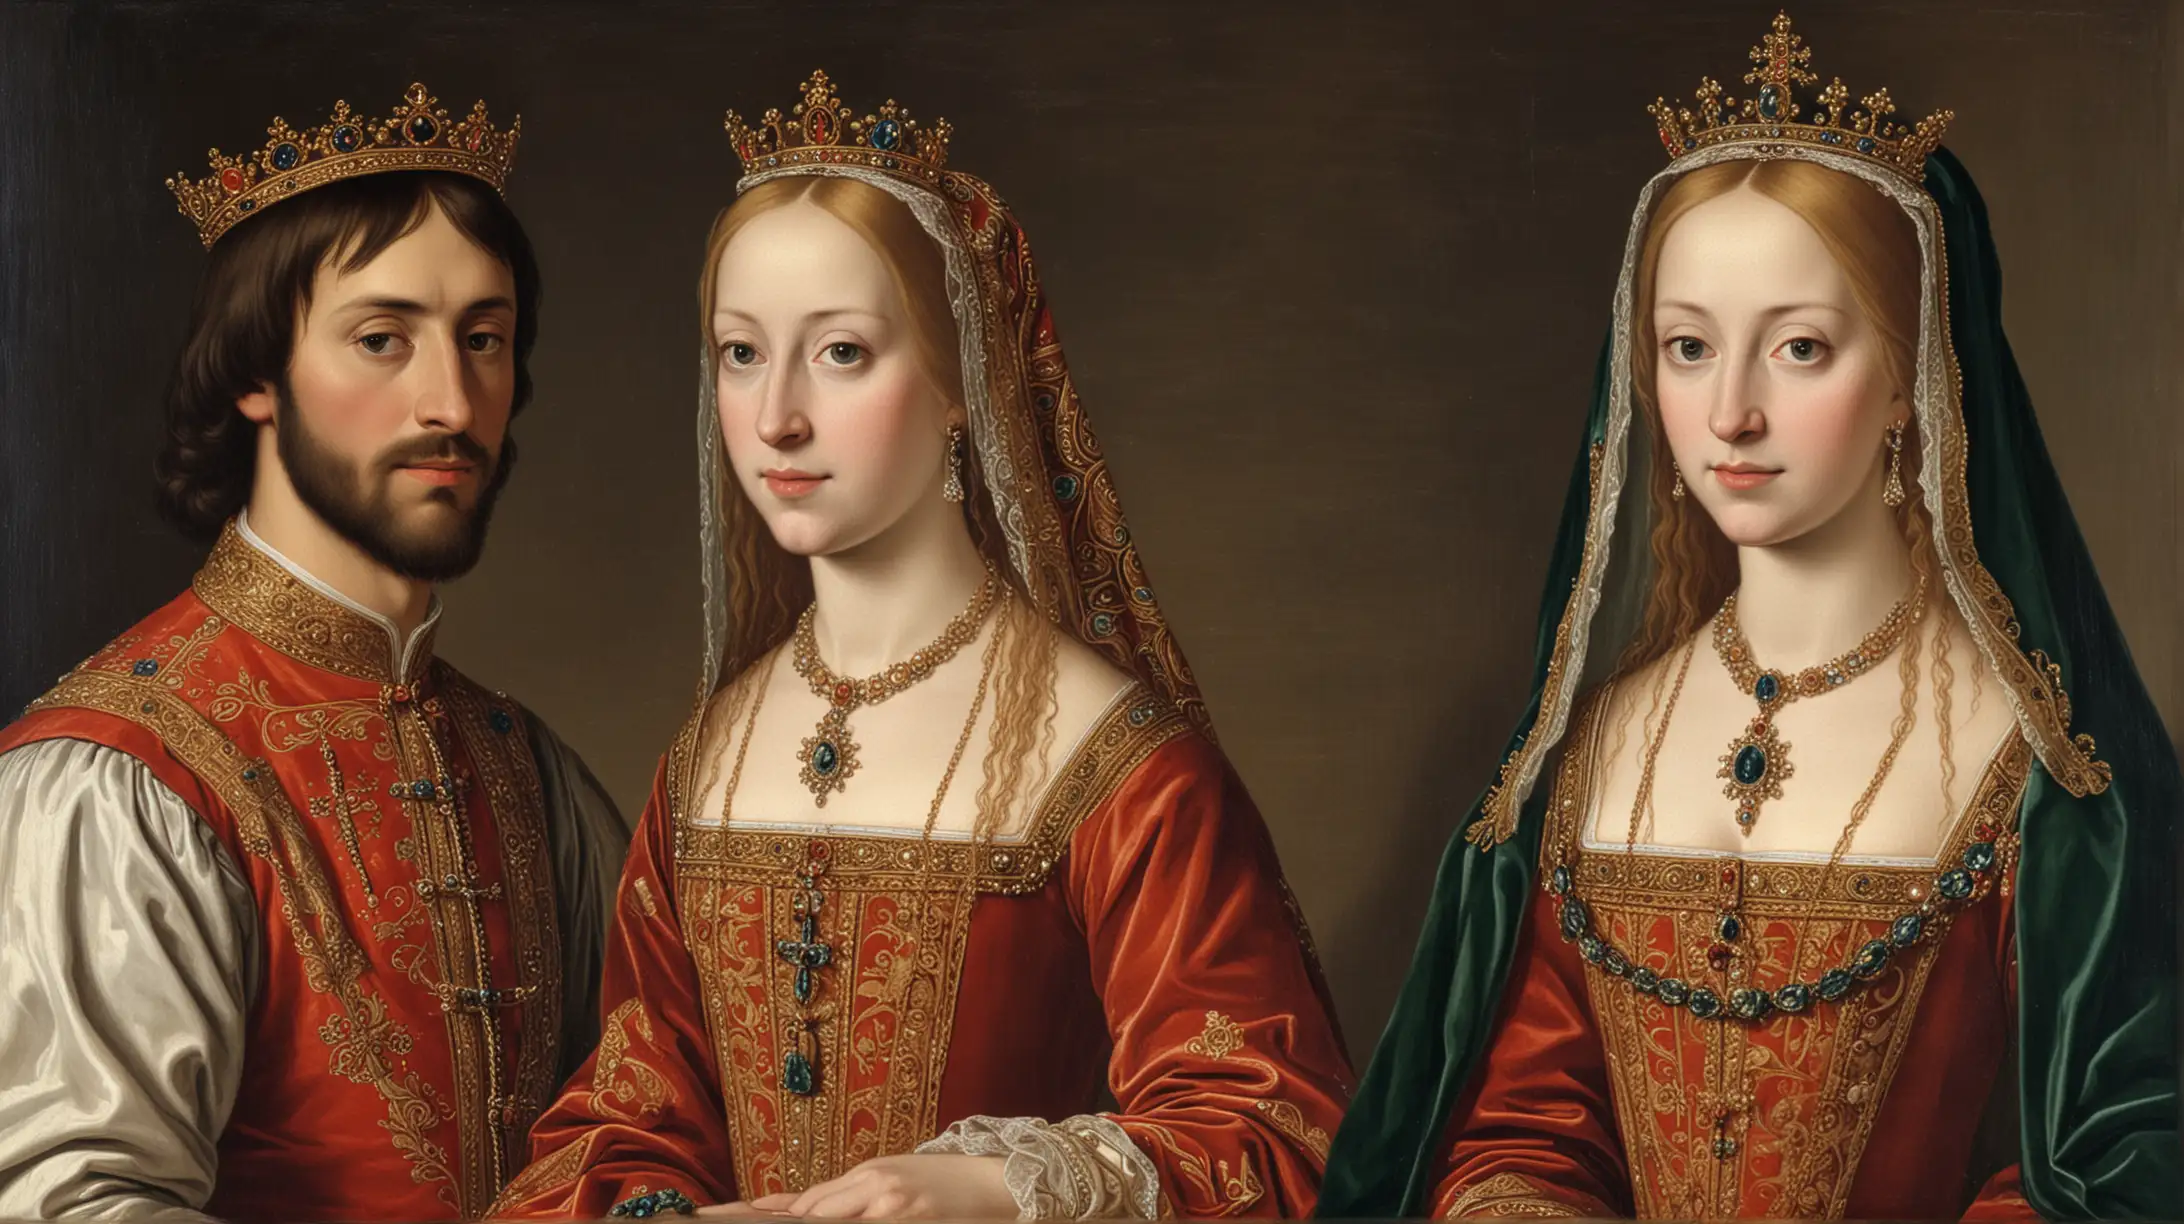 Isabel I de Castilla y Fernando II de Aragón, conocidos como los Reyes Católicos, se unieron en matrimonio en 1469, 